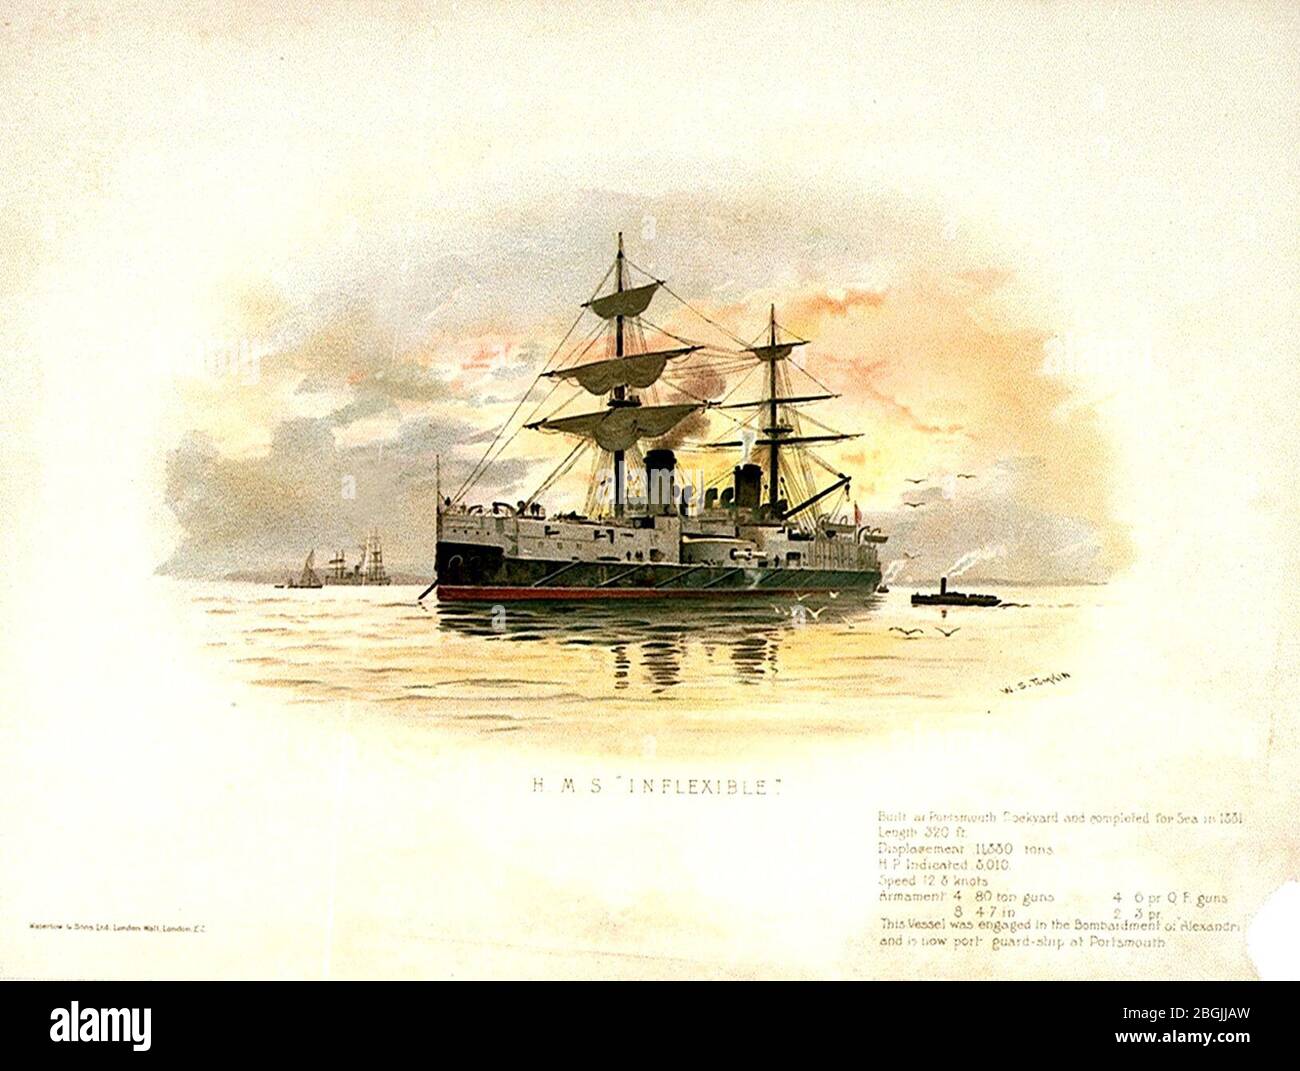 HMS unflexibel gebaut in Portsmouth Dockyard und fertiggestellt für Sea in 1881. Länge 320 m Hubraum 11, 800 Tonnen. HPI 8010. Geschwindigkeit 12.8 Knoten. Bewaffnung 4 80 Tonnen Kanonen 4 6pr Q F Kanonen 8 4.7in 2 3 PR Dieses Schiff war Stockfoto